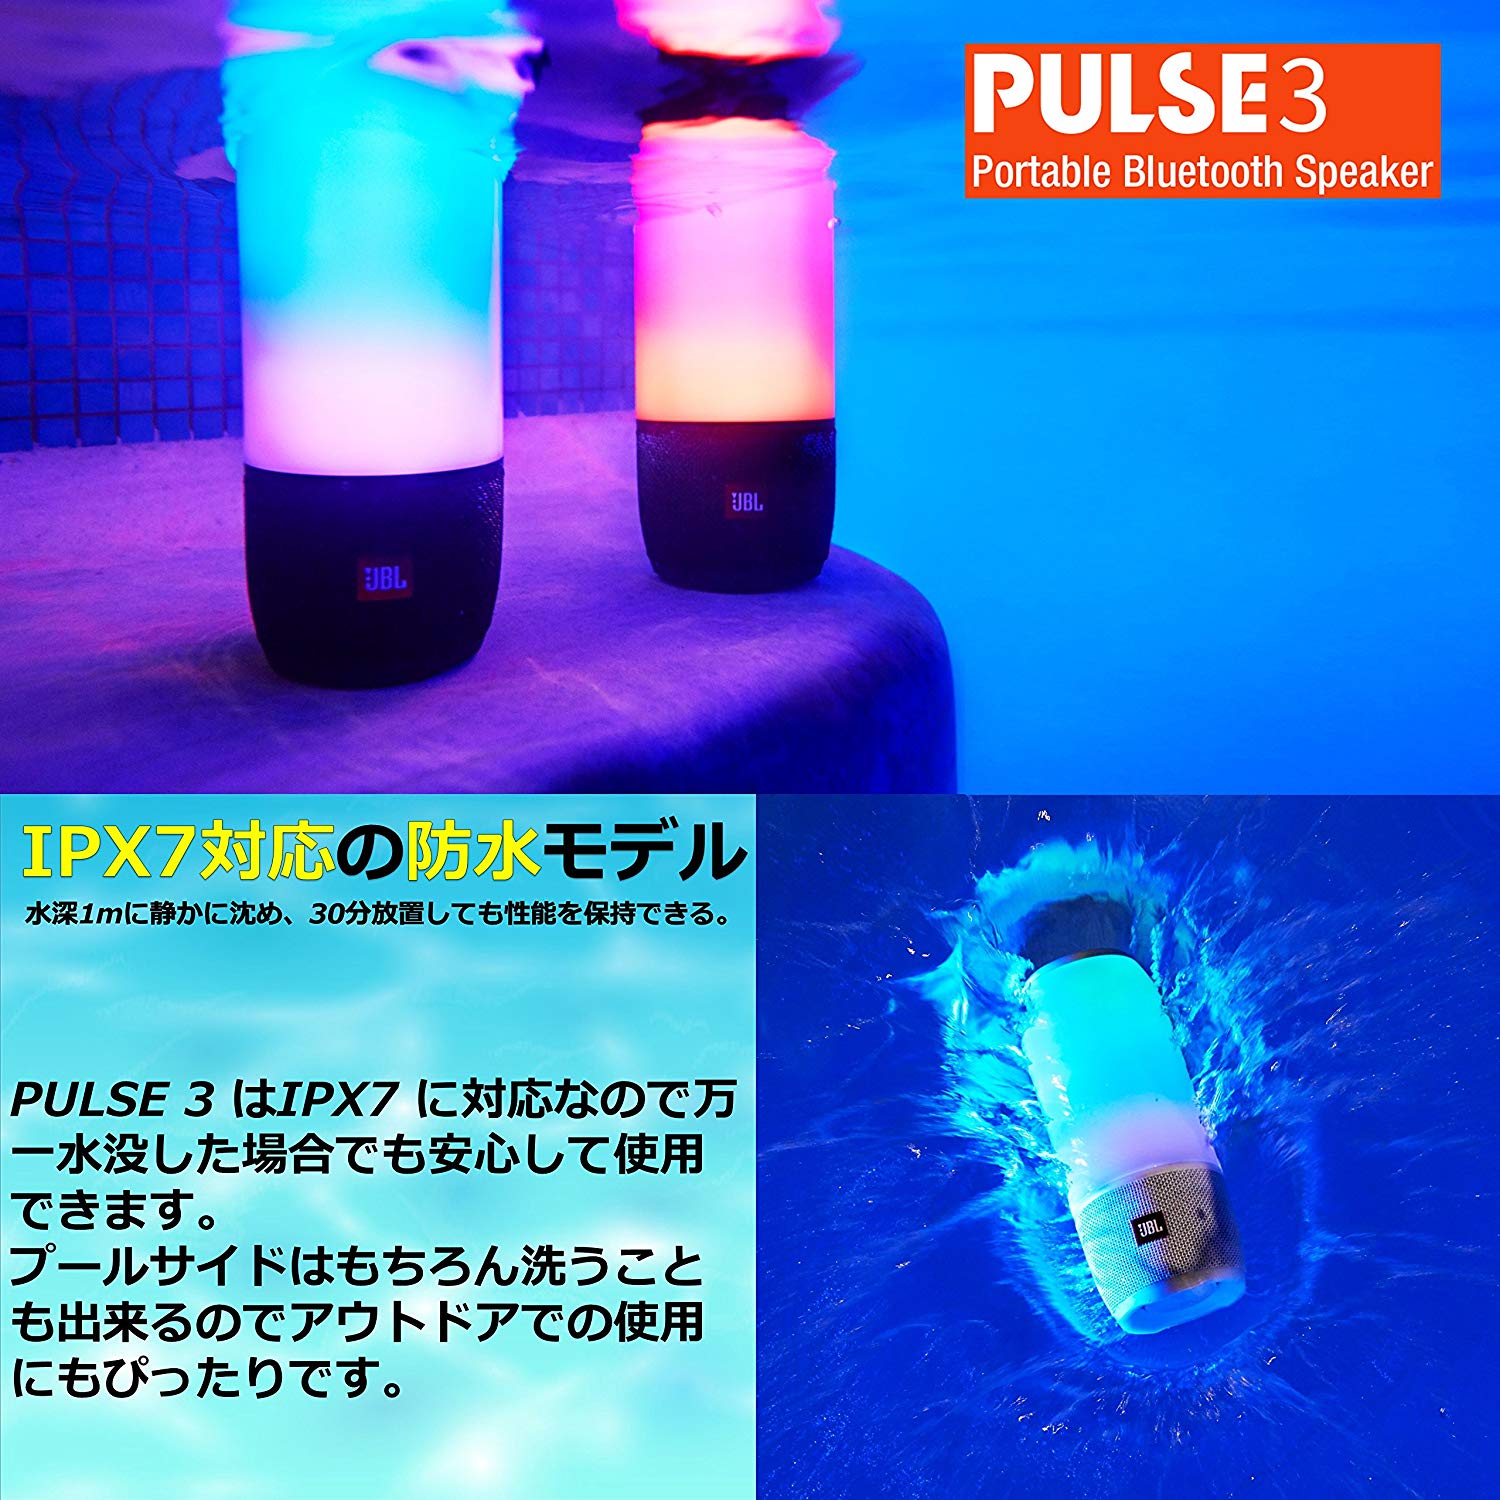 音に合わせてledが光る Jbl ポータブルスピーカー Pulse 3 Ipx7防水 連続再生15時間 国内正規品 全2色 Dj機材アナログレコード専門店otairecord